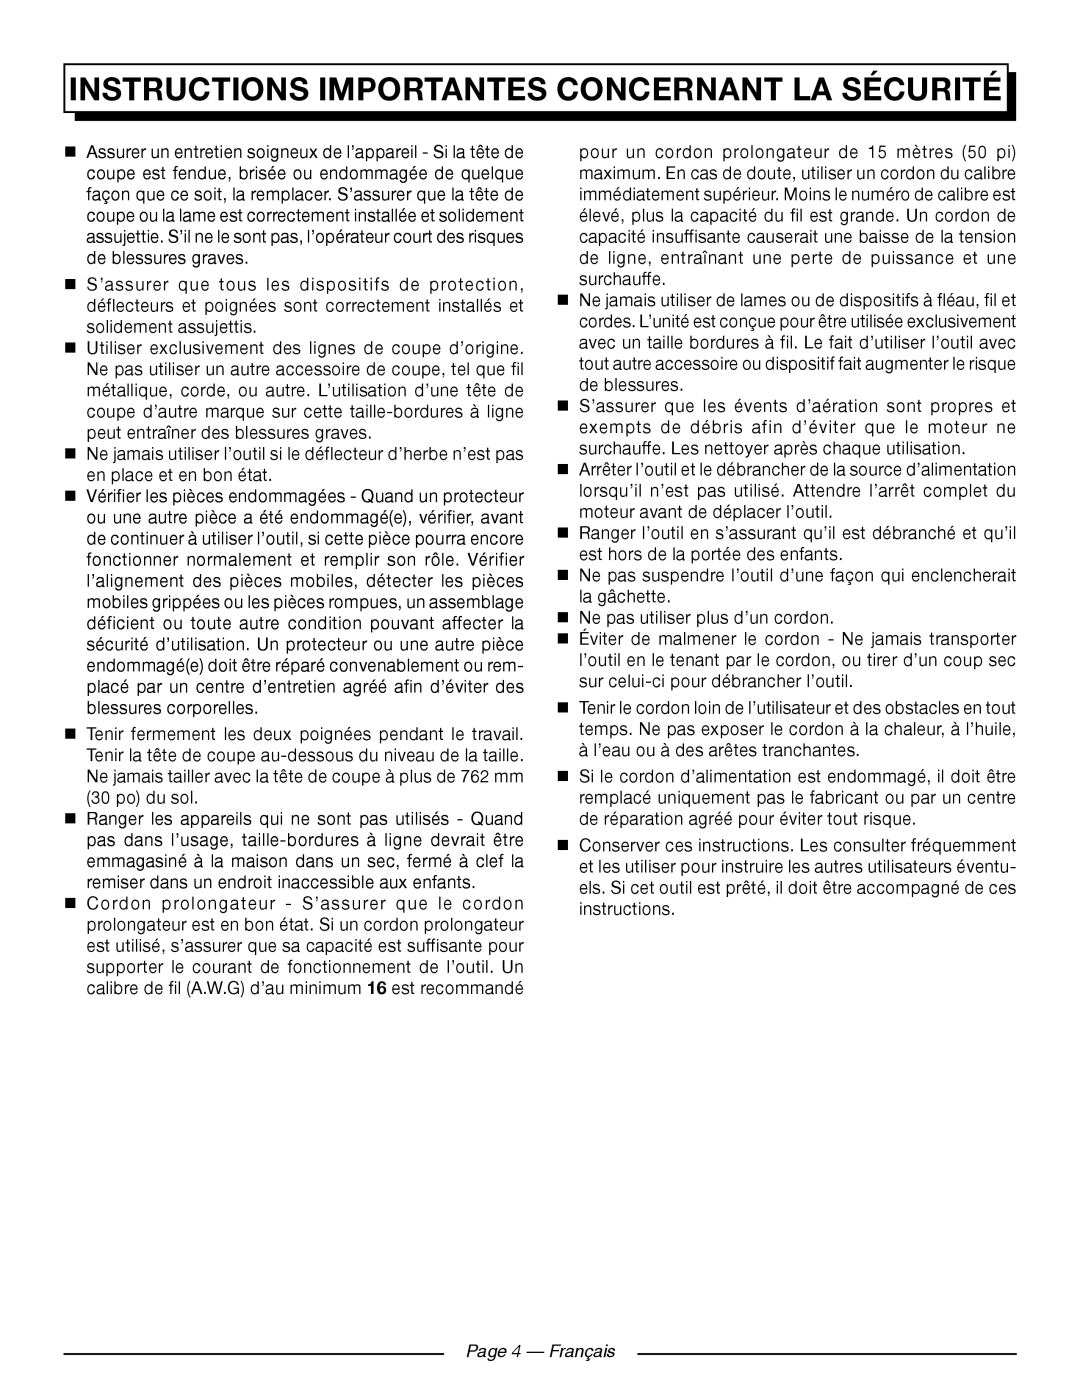 Homelite UT41121 manuel dutilisation Page 4 - Français, Instructions Importantes Concernant La Sécurité 